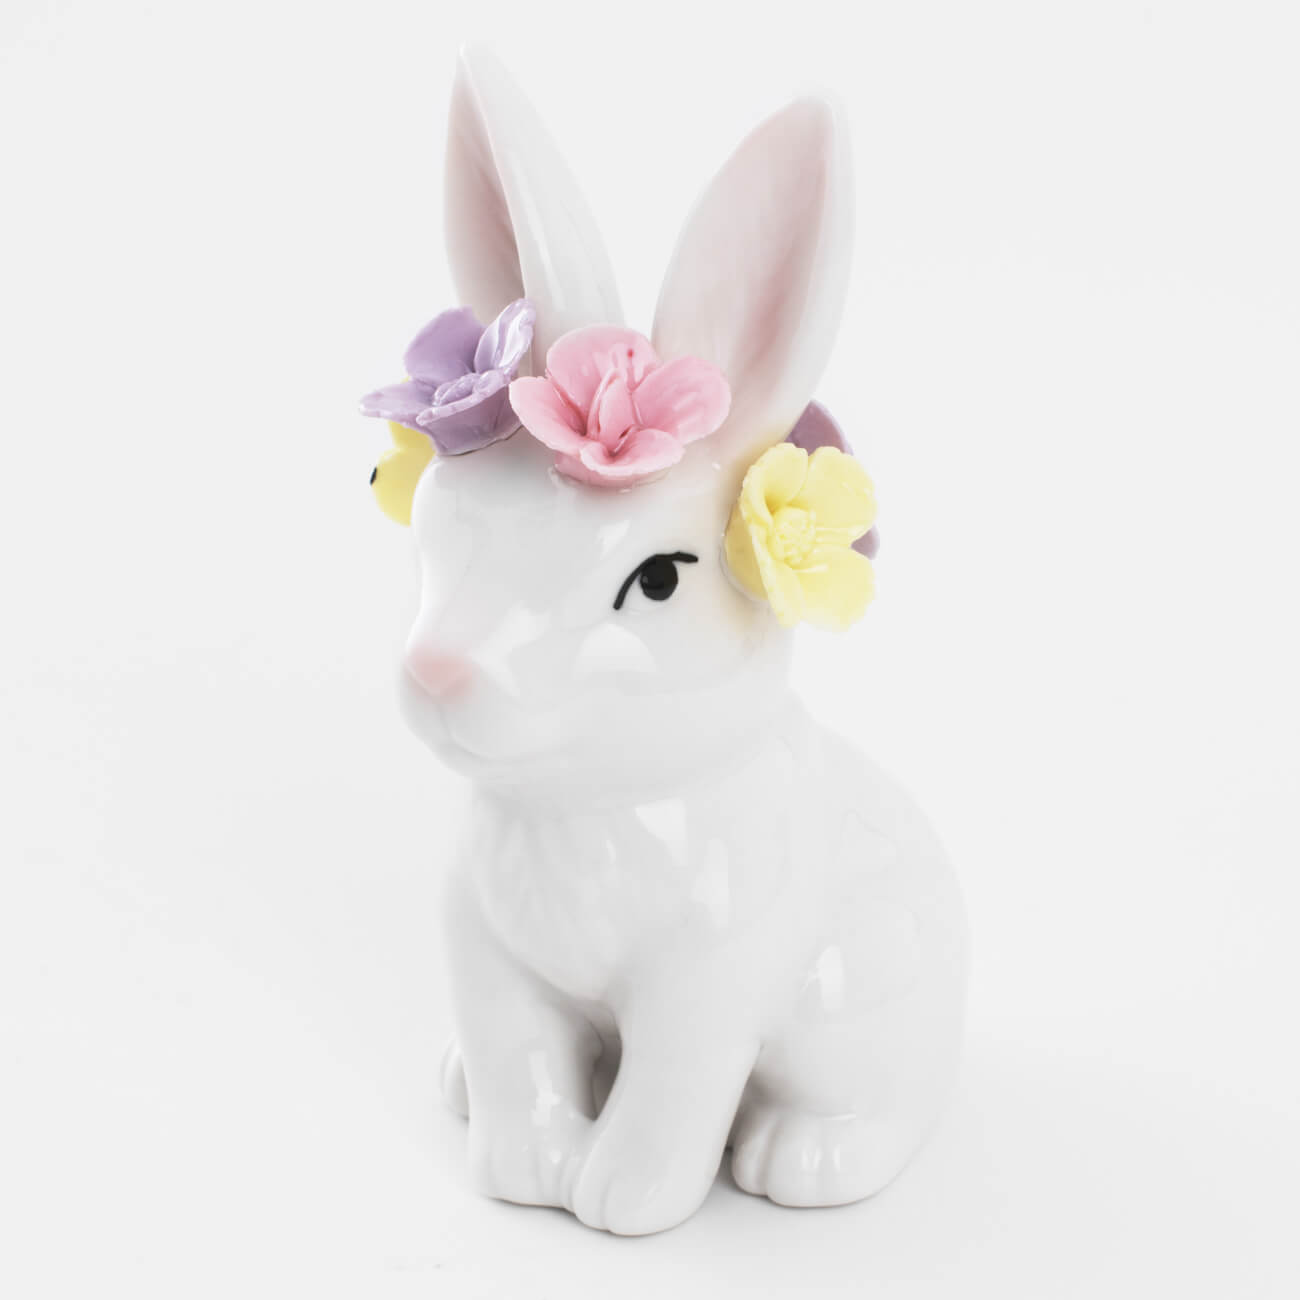 статуэтка с подсветкой 13 см фарфор p белая кролик с ами easter Статуэтка, 12 см, фарфор P, белая, Кролик в цветочном венке, Easter